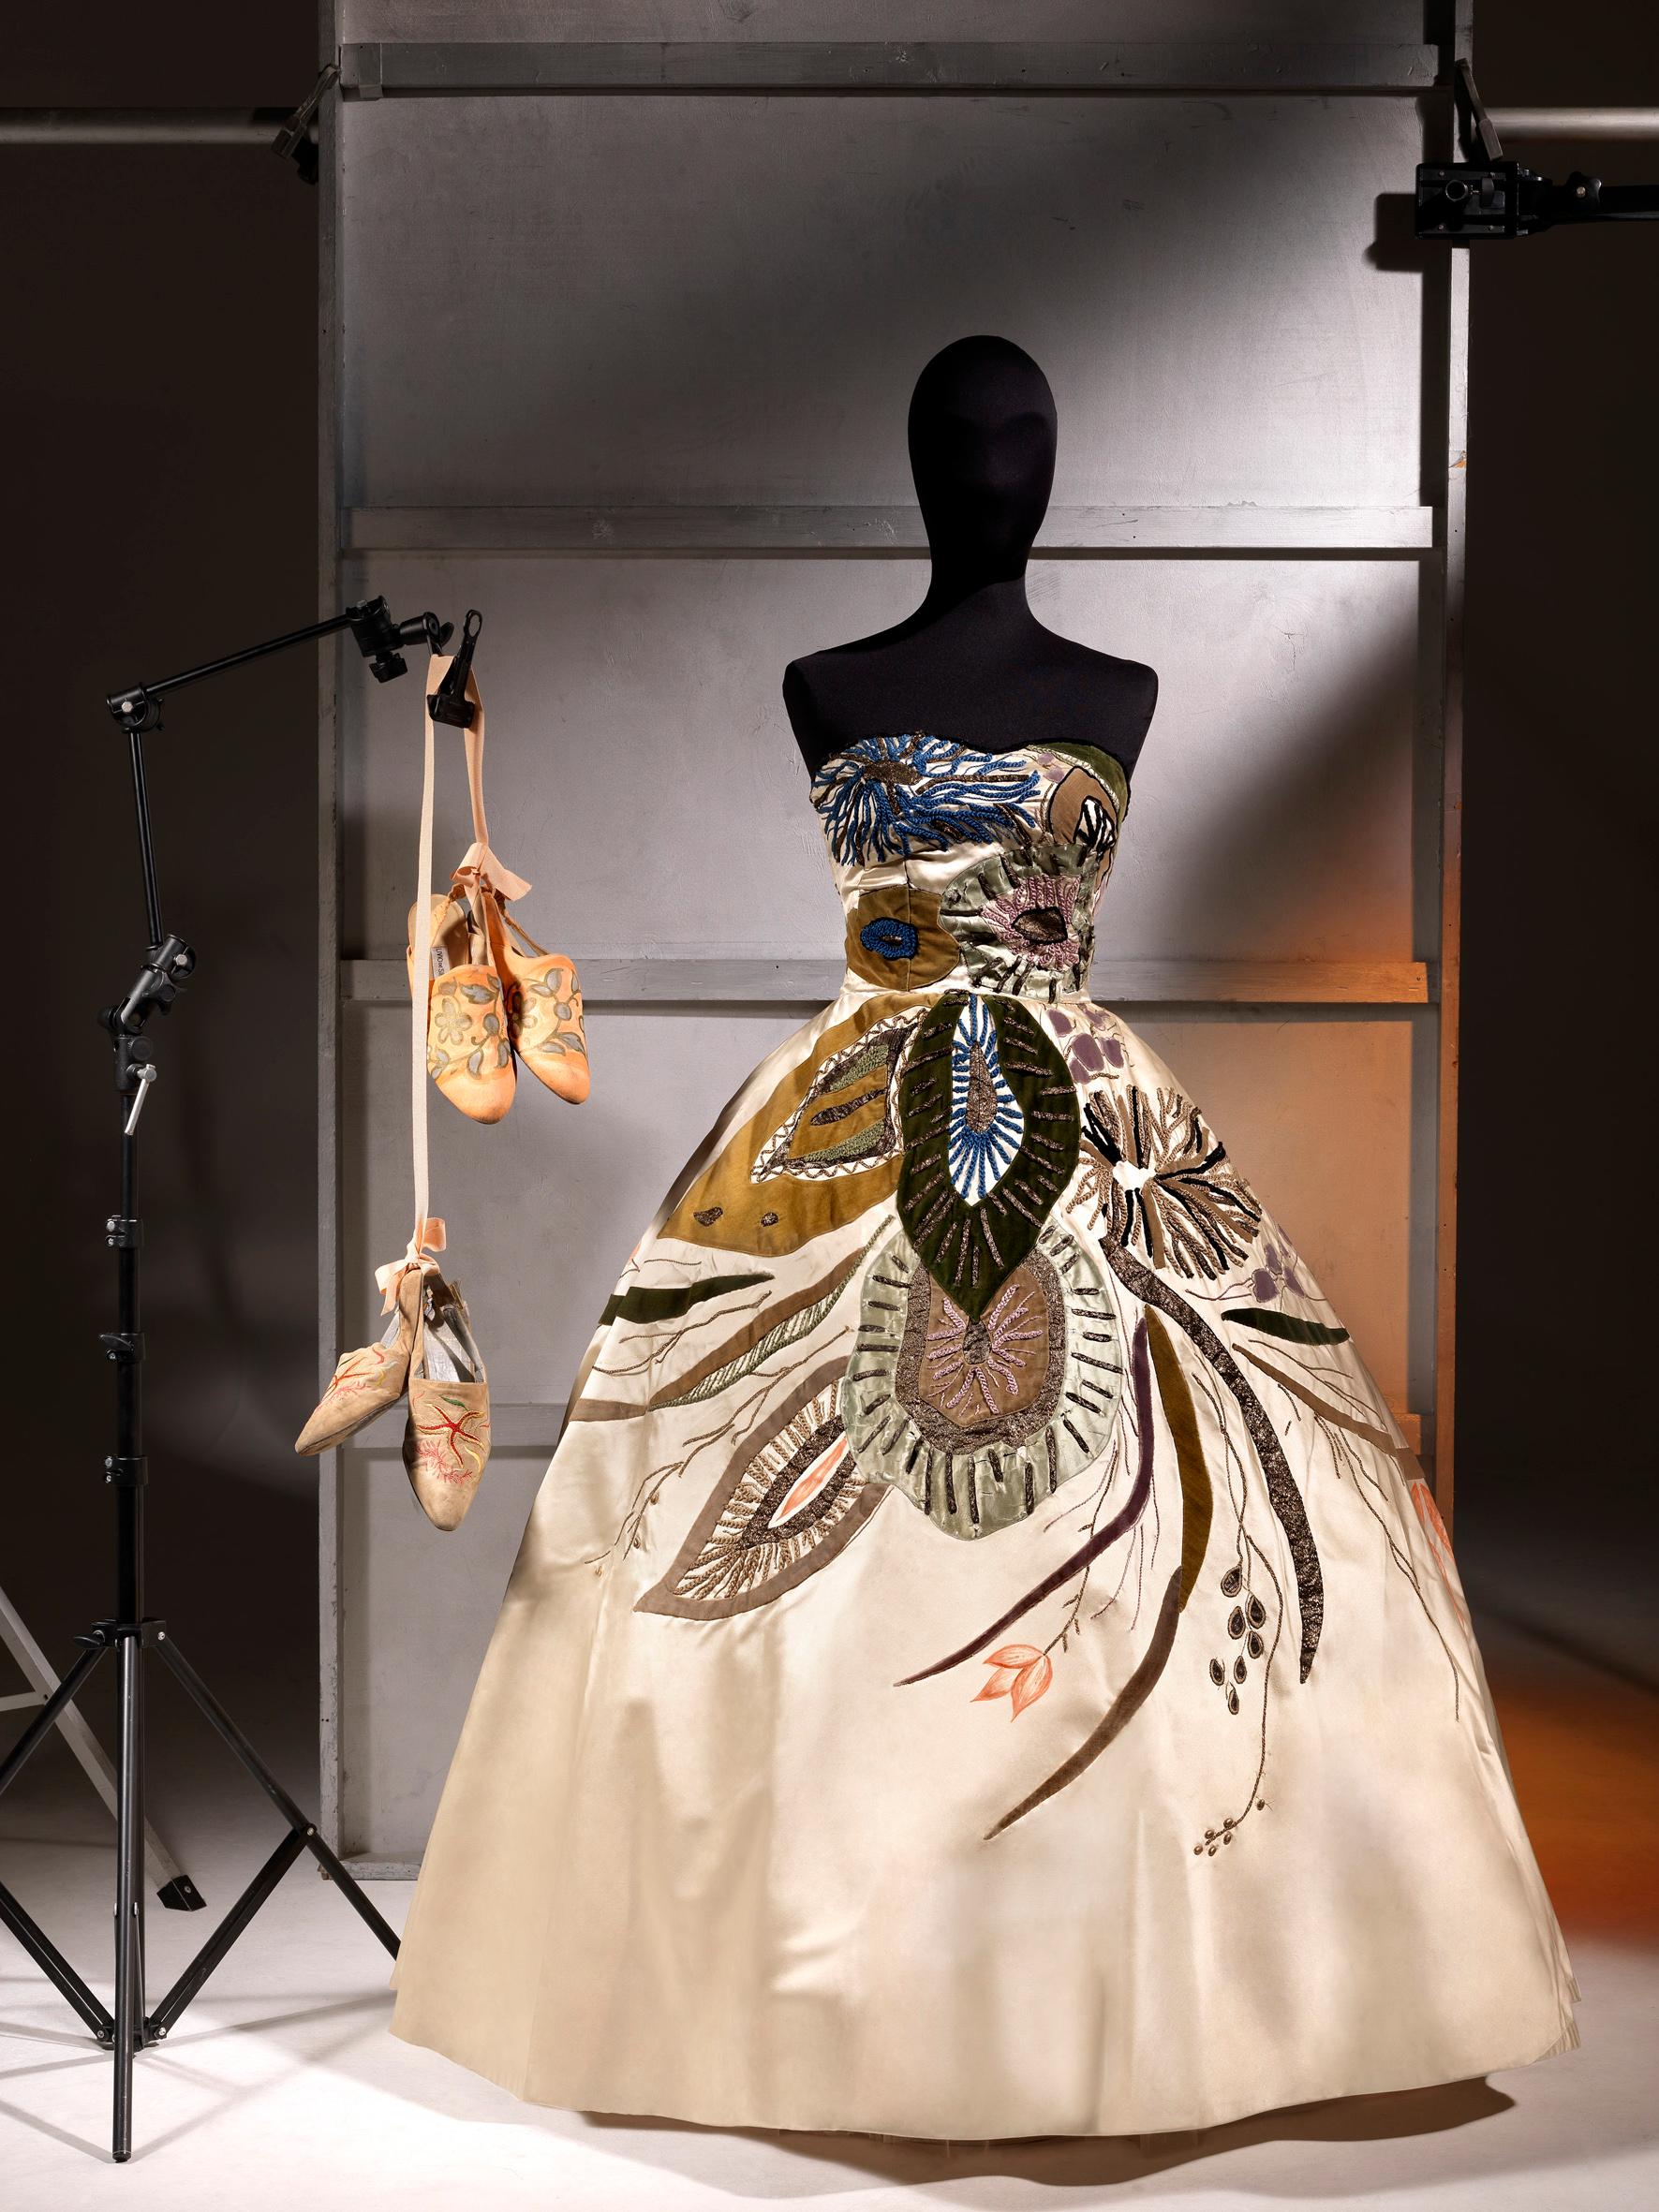 Ein wichtiges und absolut prächtiges Kleid aus elfenbeinfarbenem Satin mit Meeresmotiv von Emilio Schuberth, italienische Couture, aus dem Jahr 1951. Ein der Met Gala würdiger Look! Dieses atemberaubende Kleid wurde für die italienische